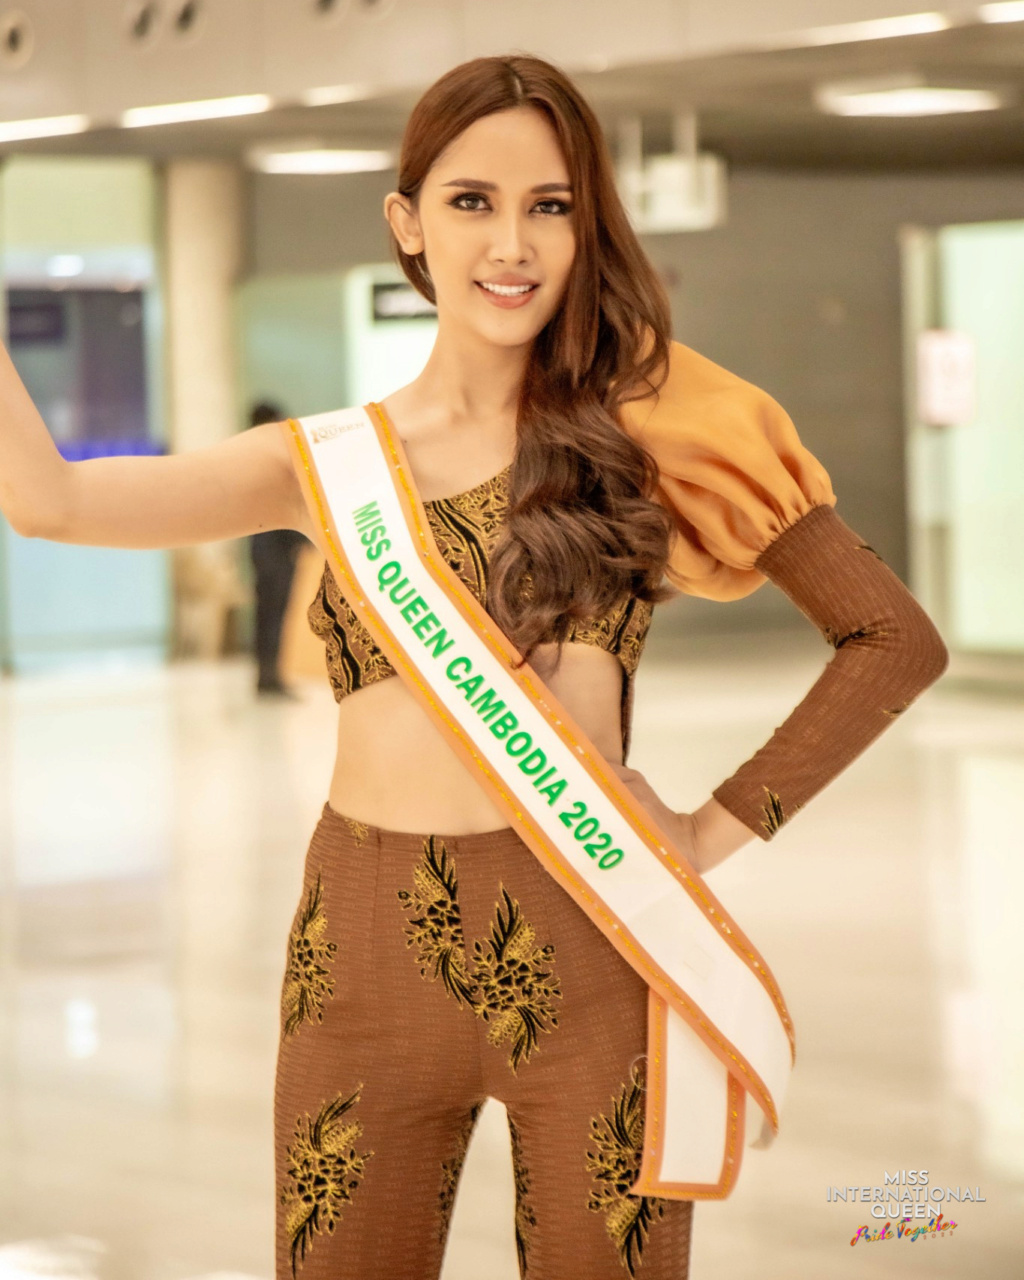 Miss International Queen 2022 28696610